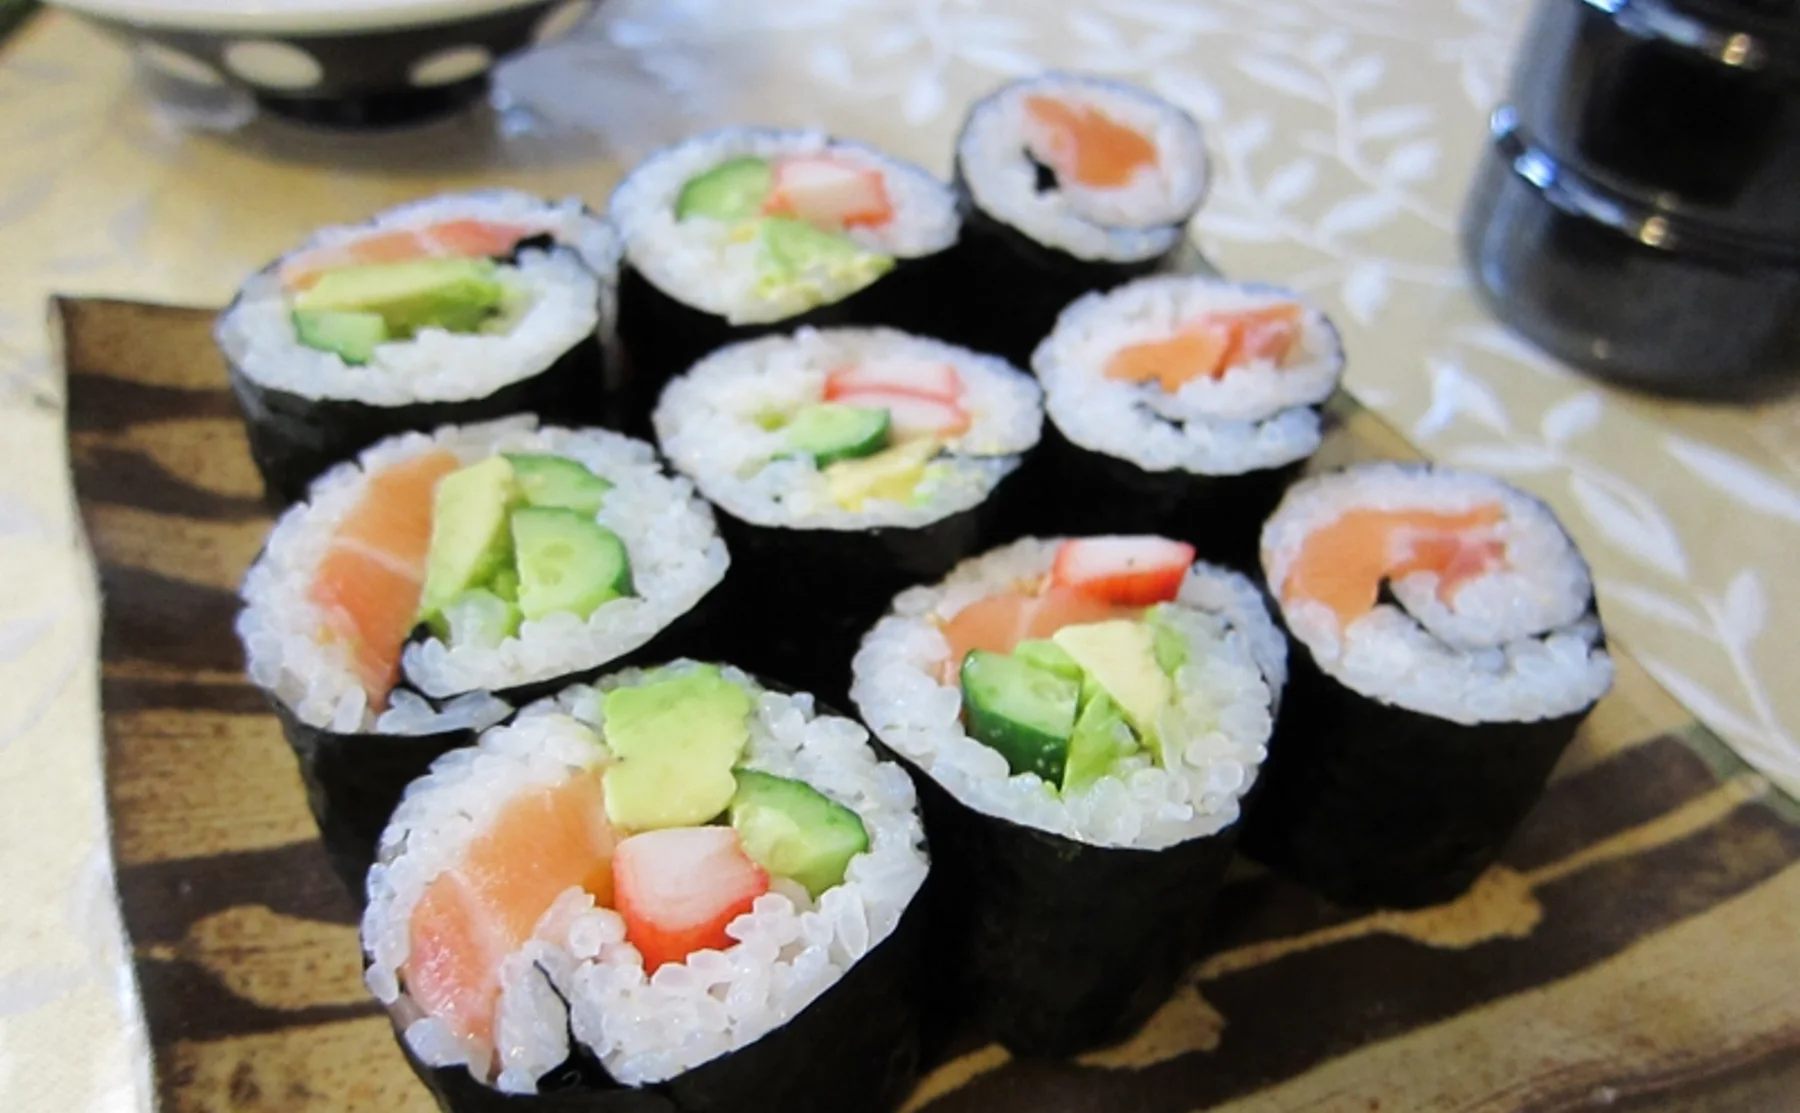 Taste The Wonderful World Of Sushi - 475896